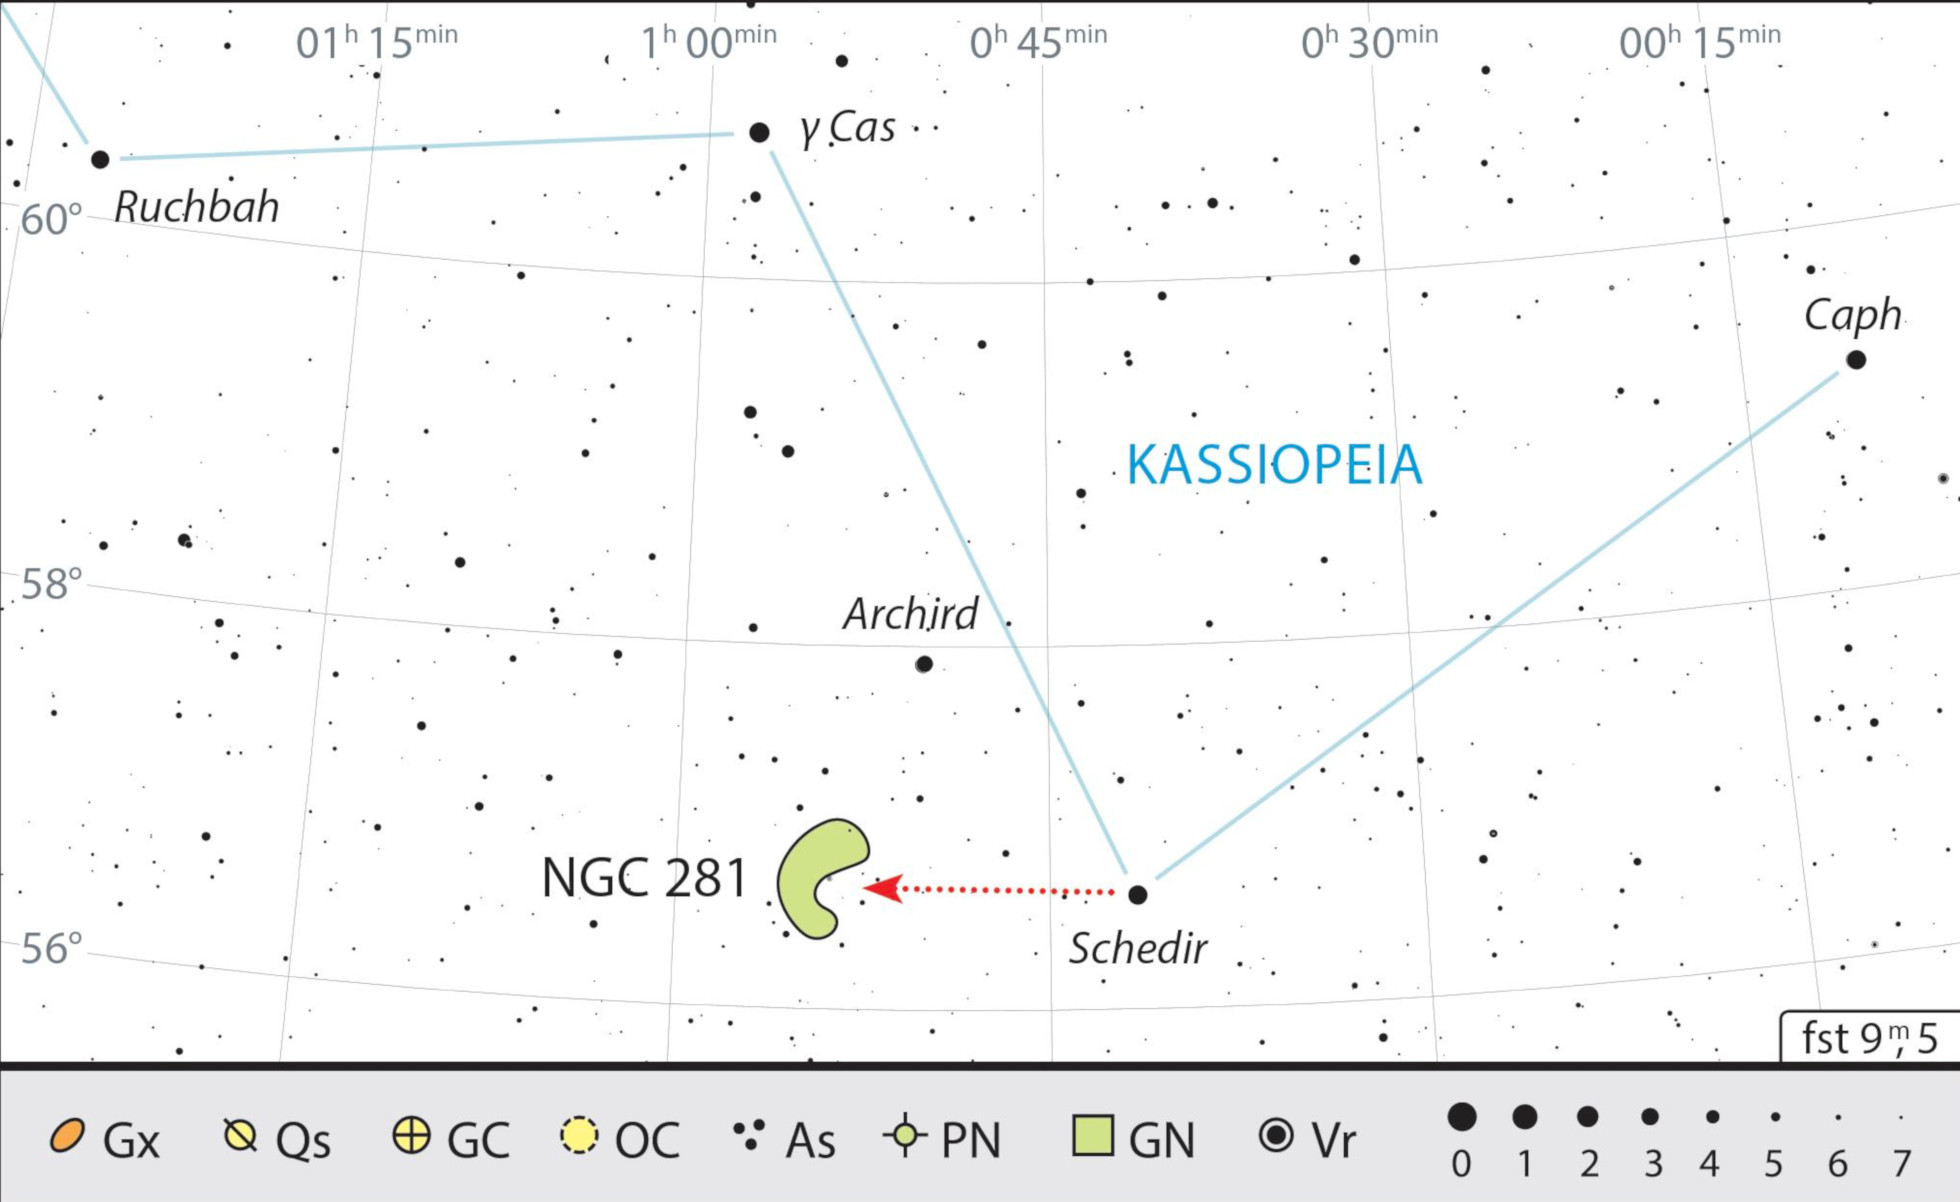 La nebulosa de Pacman está muy cerca de α Cas (Schedir), la estrella principal de Casiopea. J. Scholten